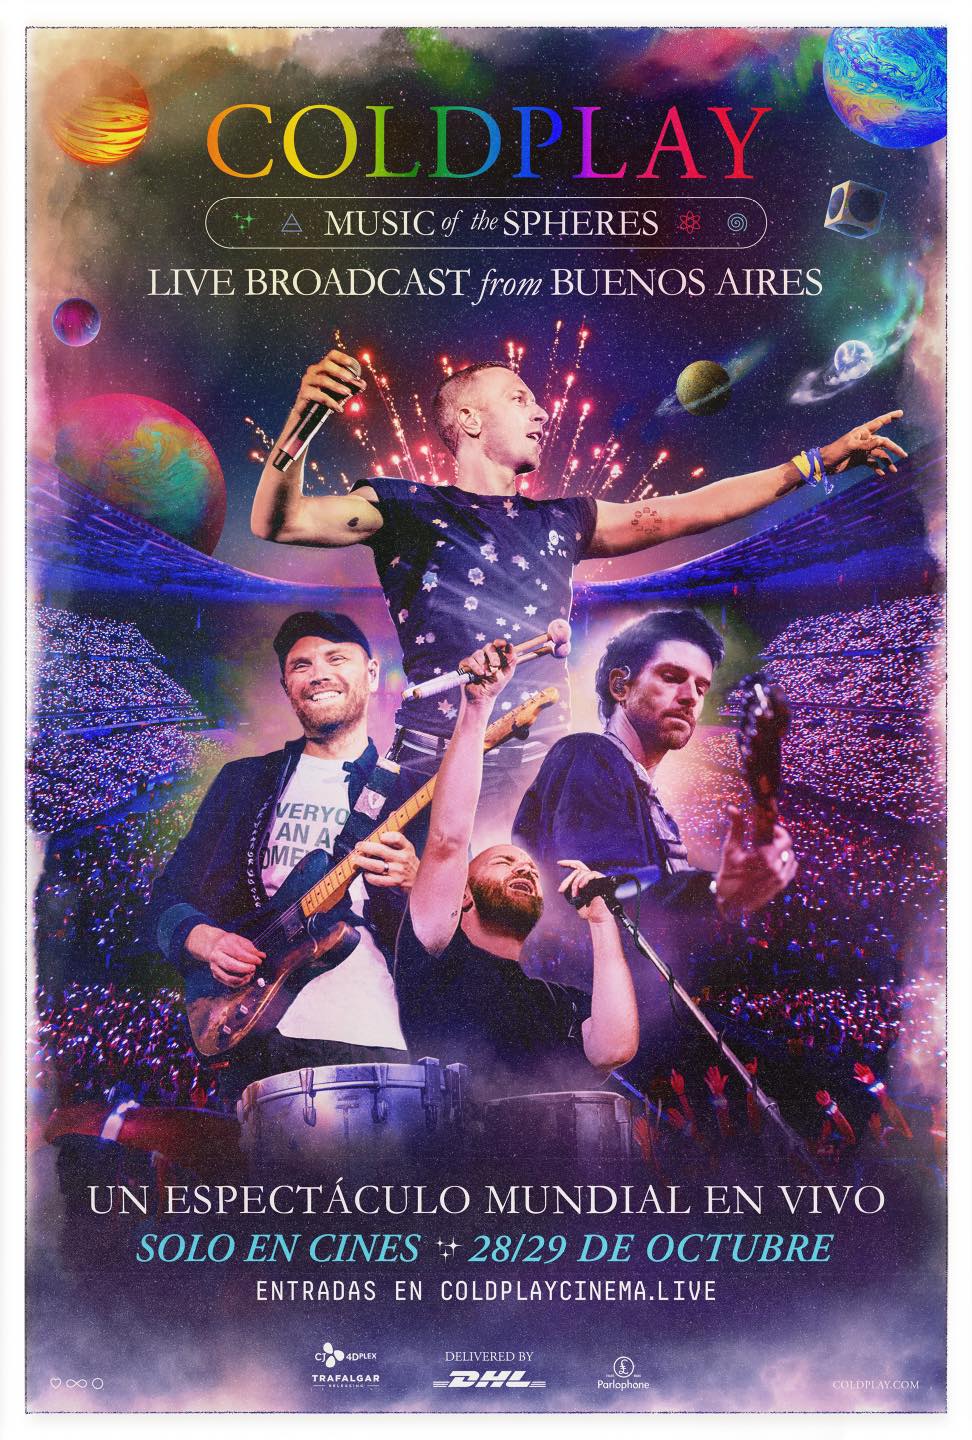 Coldplay llegará a Cinépolis con un concierto en vivo